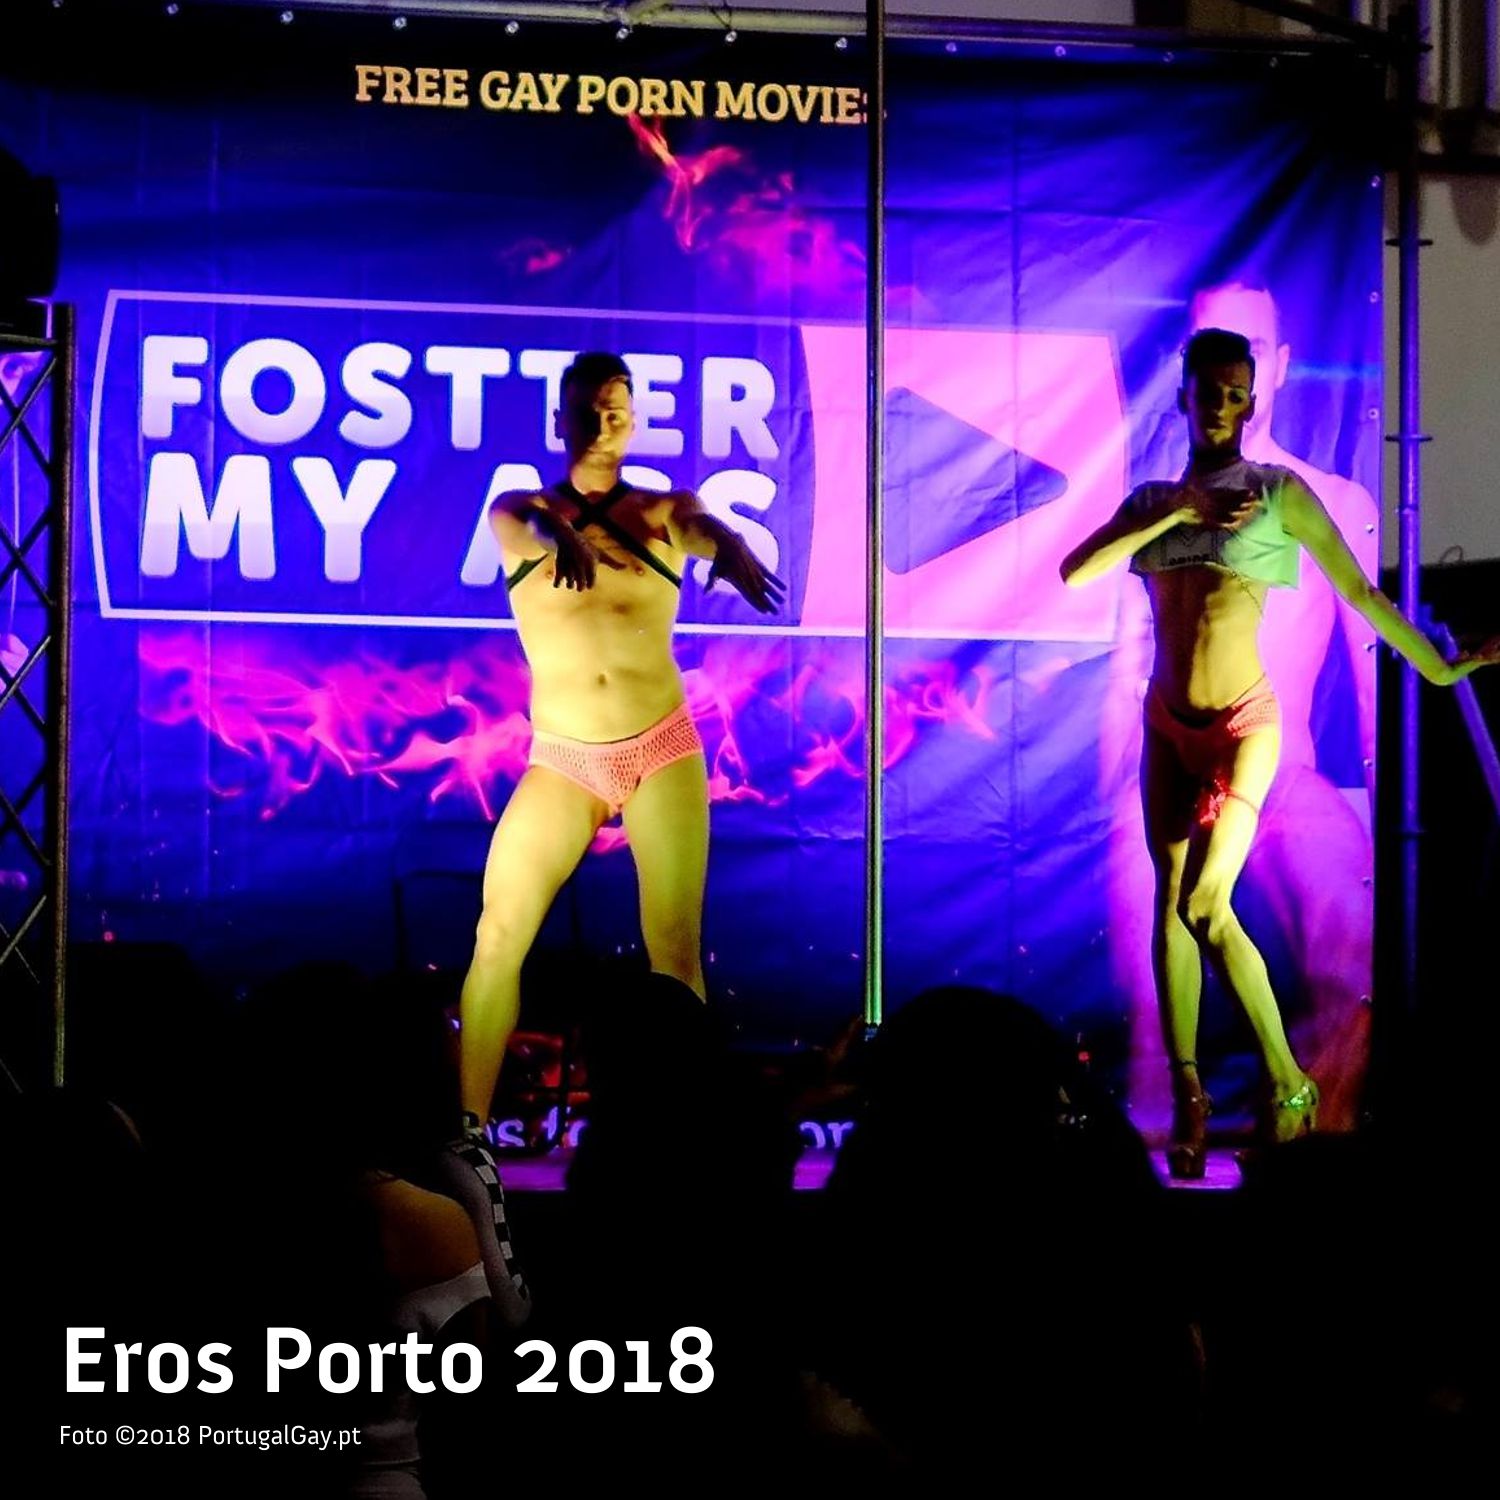 PORTUGAL: Eros Porto 2018 j mexe